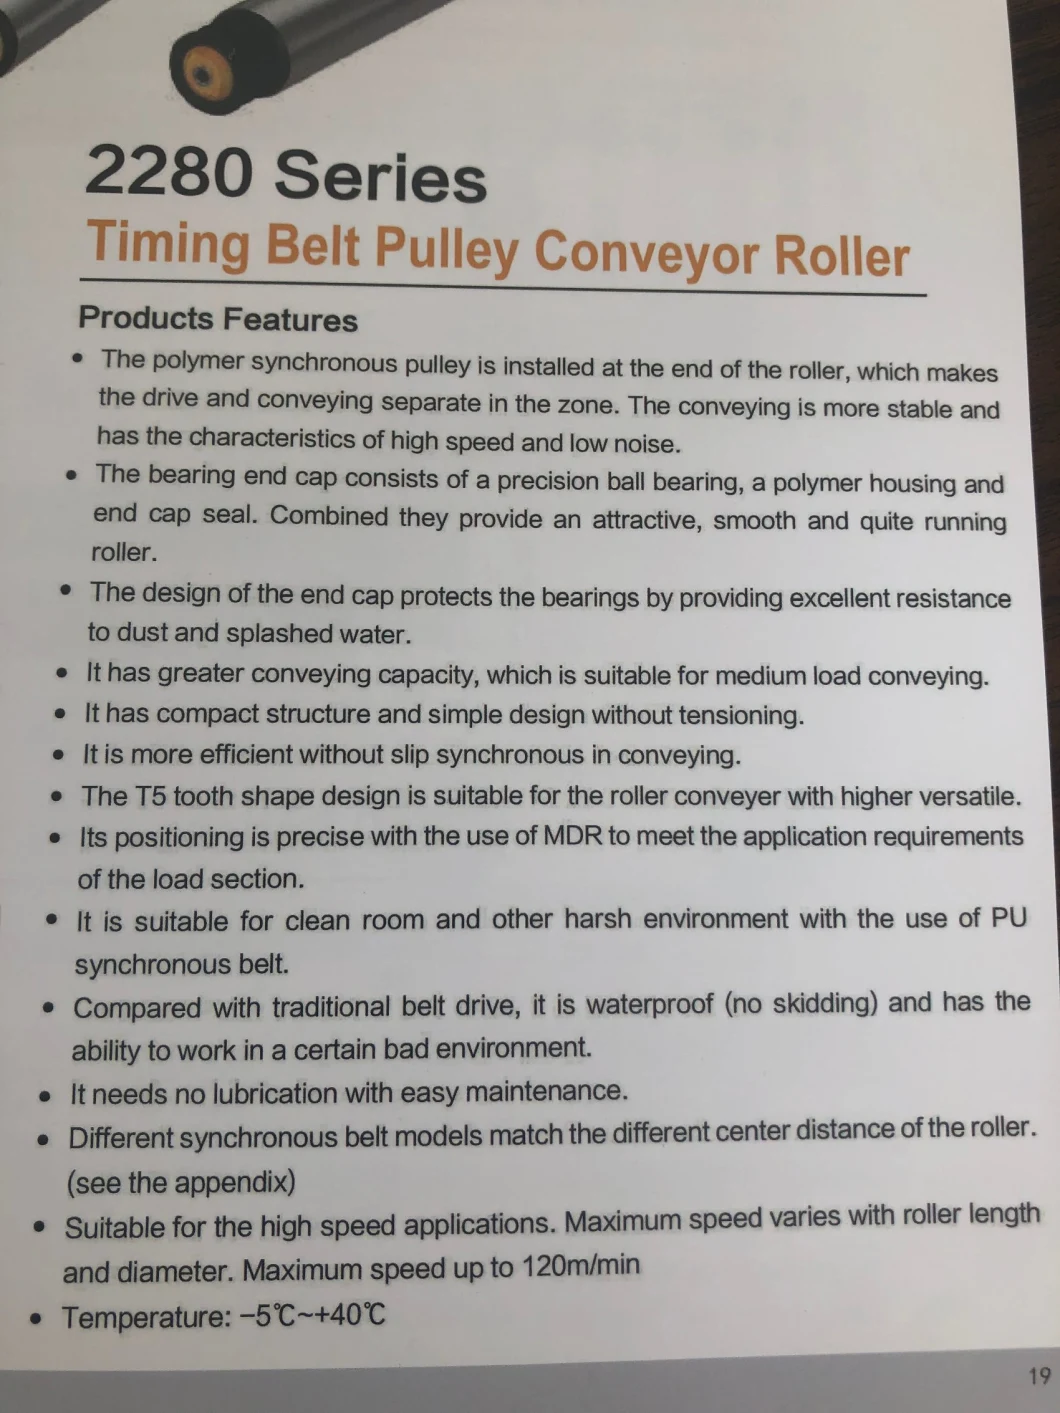 2280 Series Timing Belt Pulley Conveyor Roller